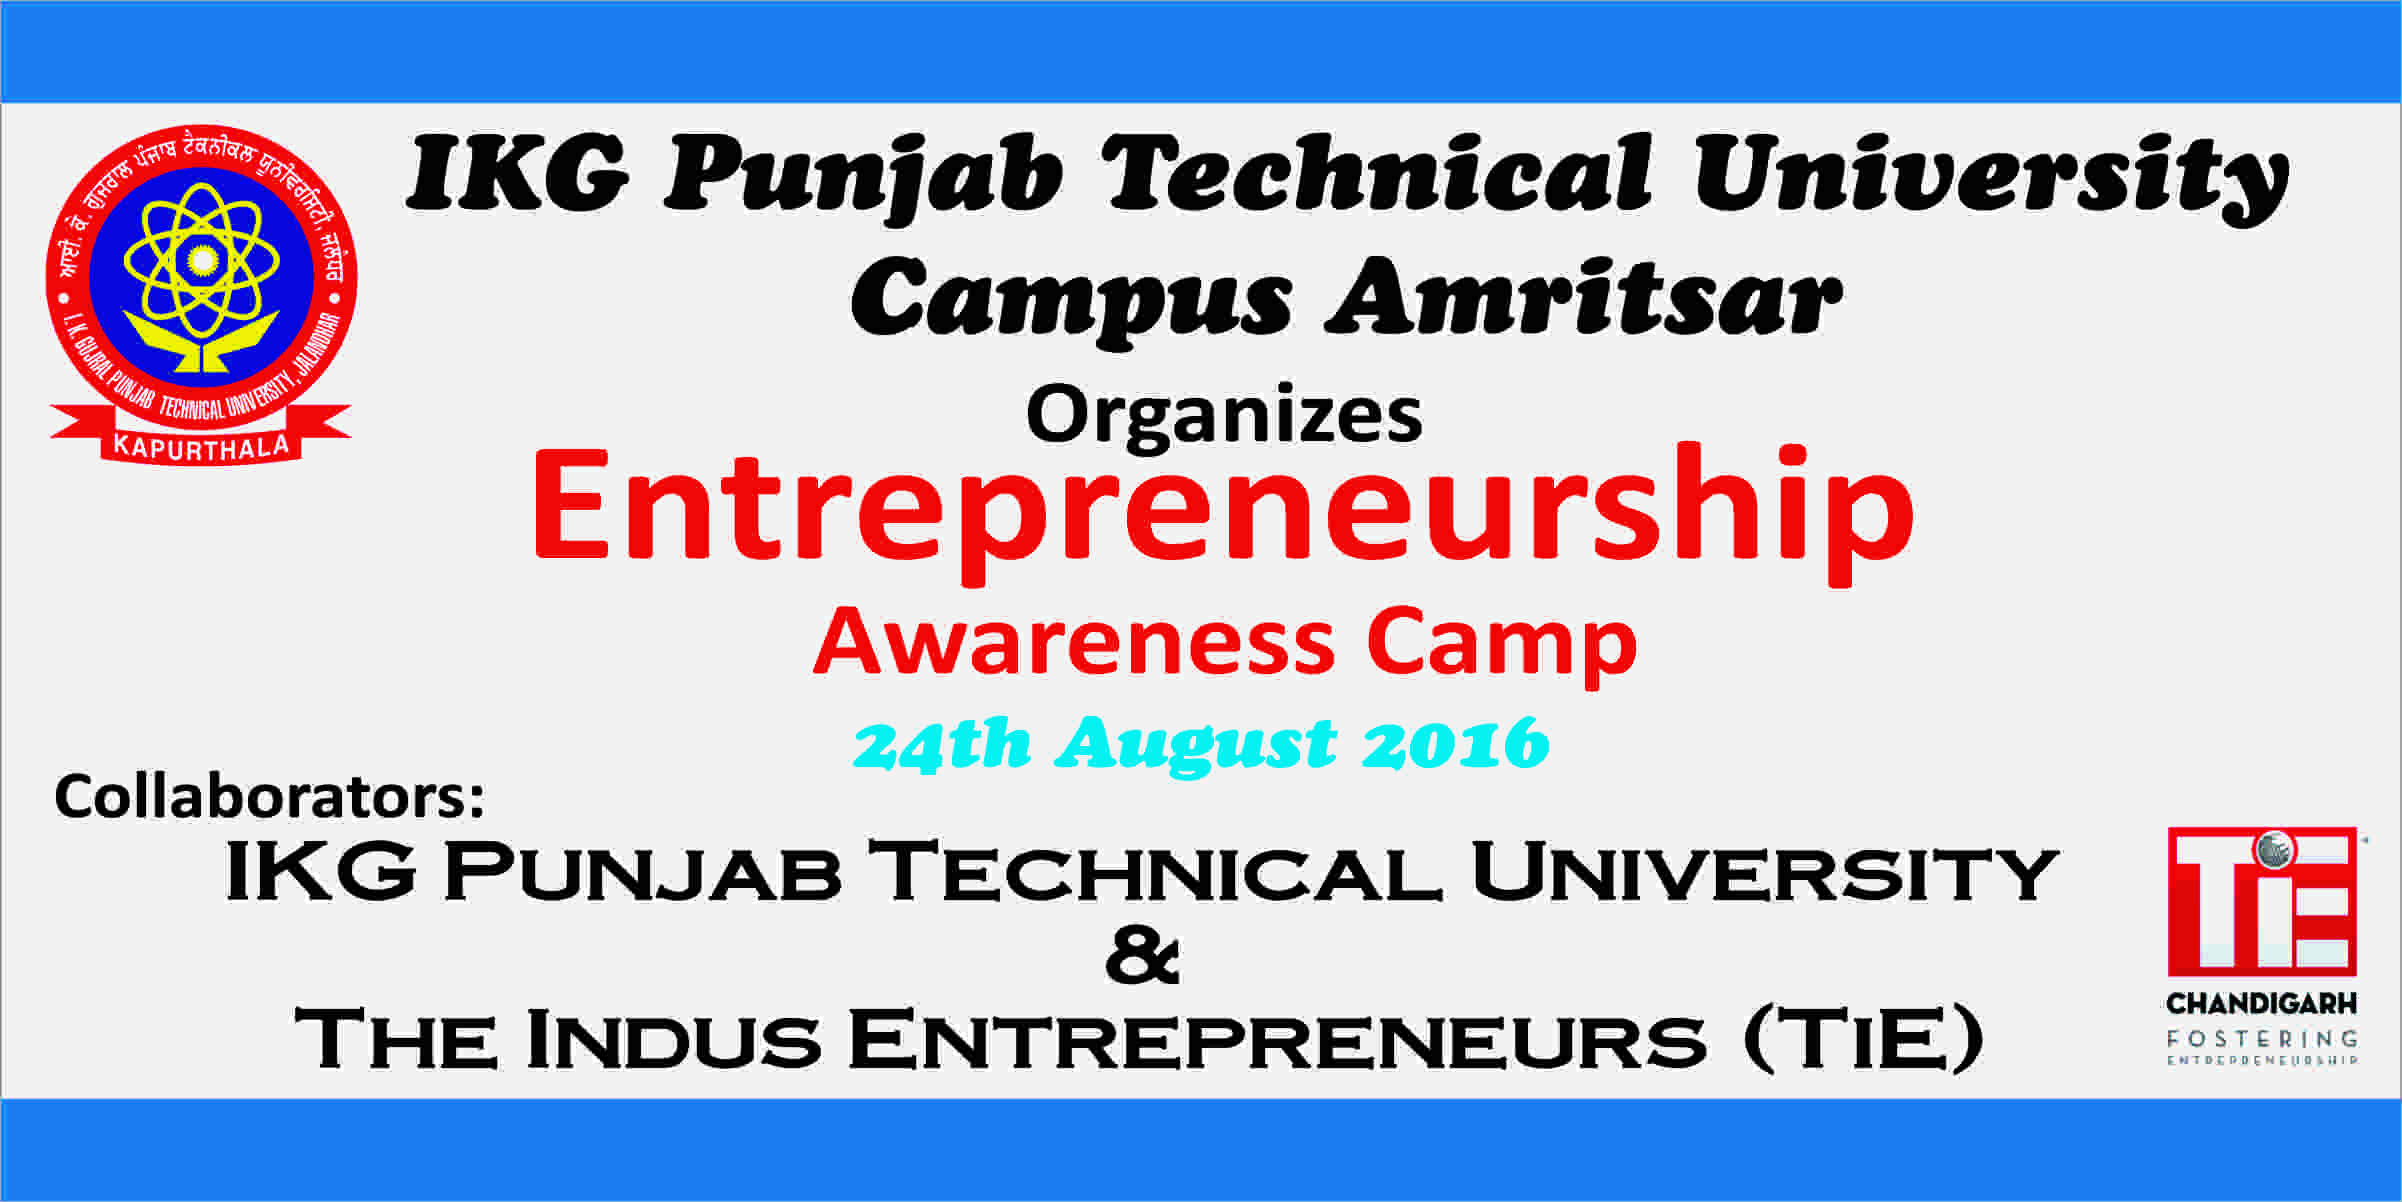 Entrepreneurship Awareness Camp on 24th August 2016